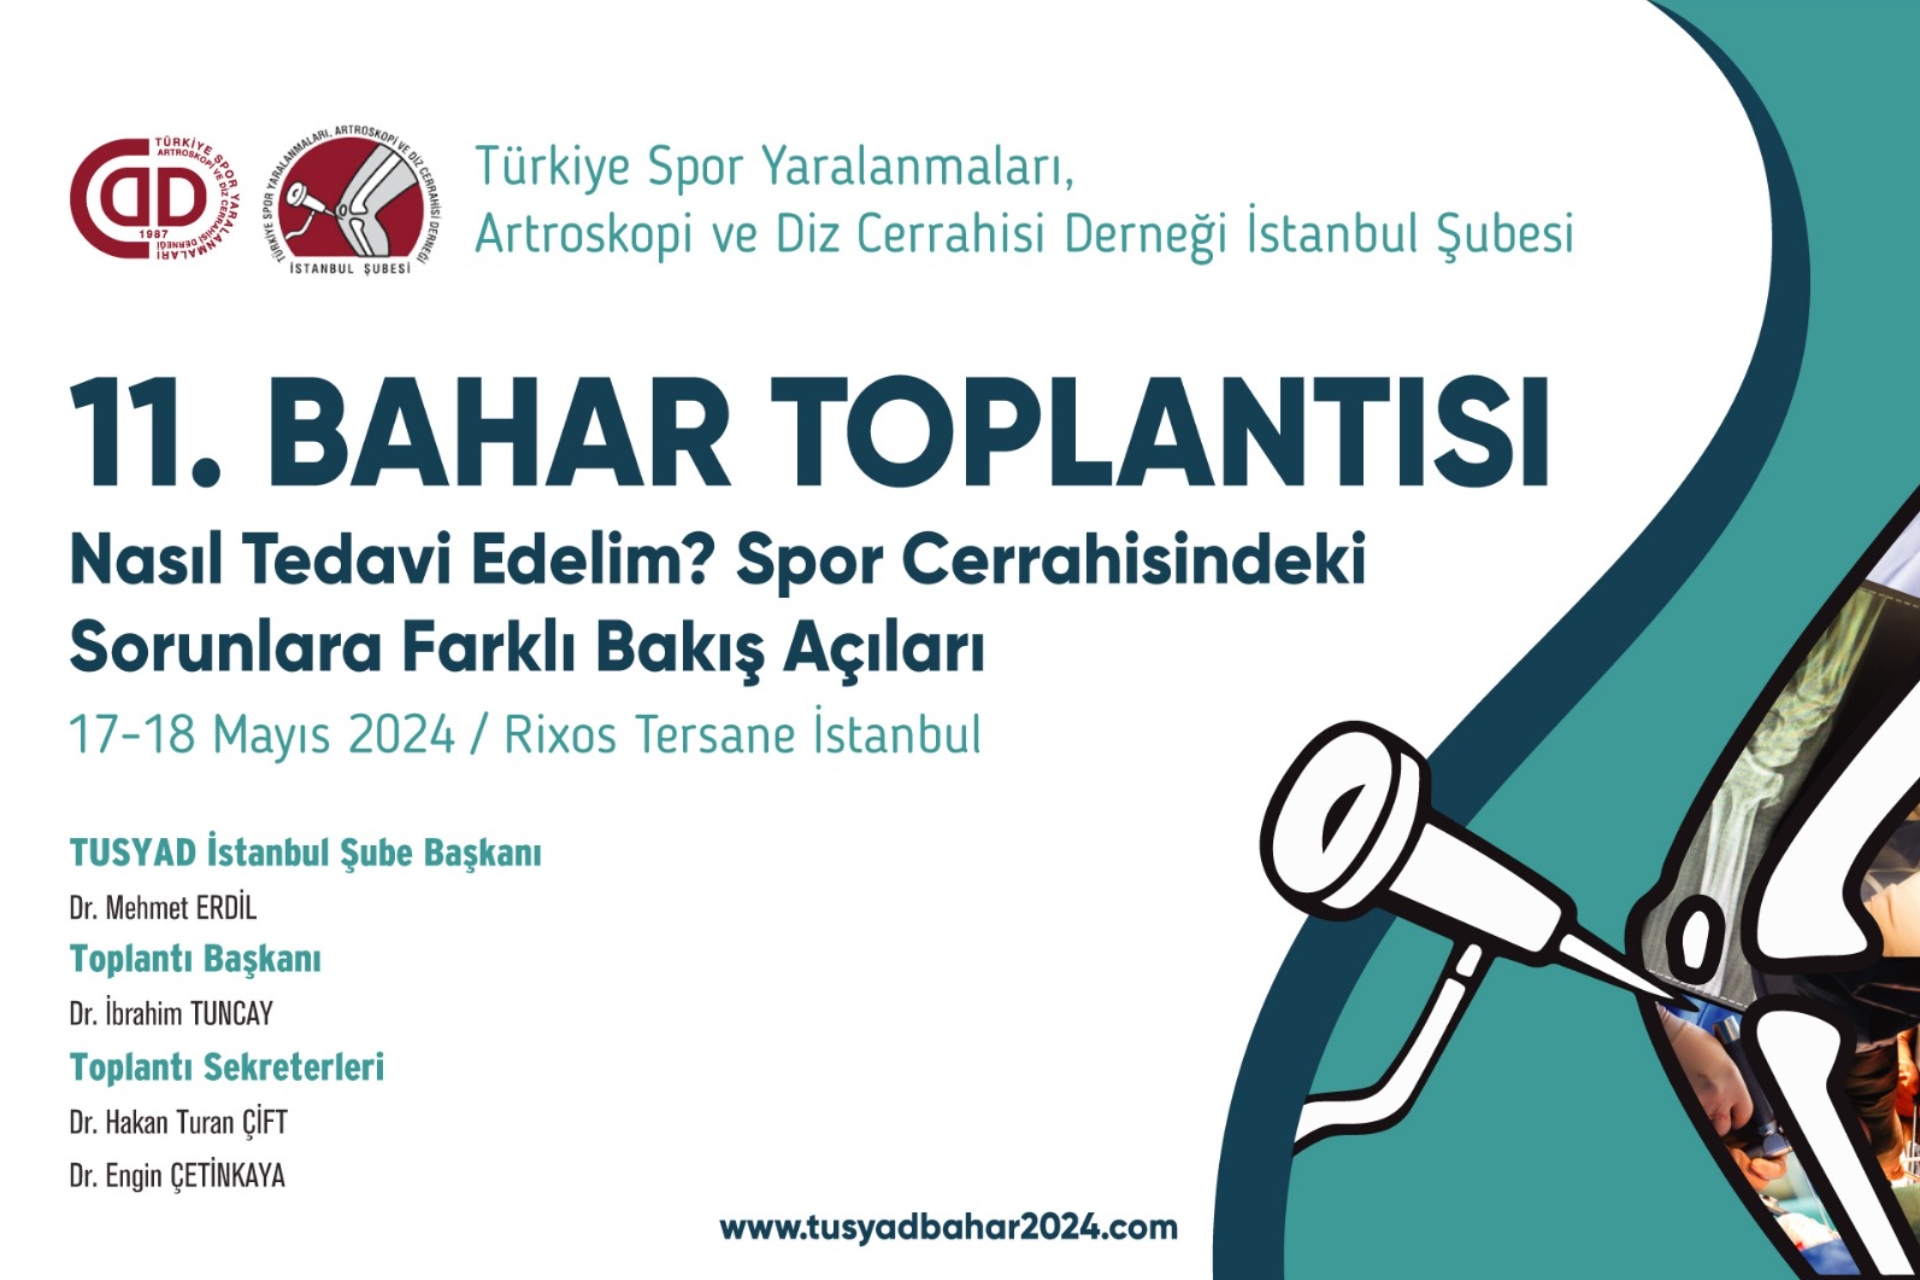 Tusyad İstanbul Şubesi Bahar Toplantısı